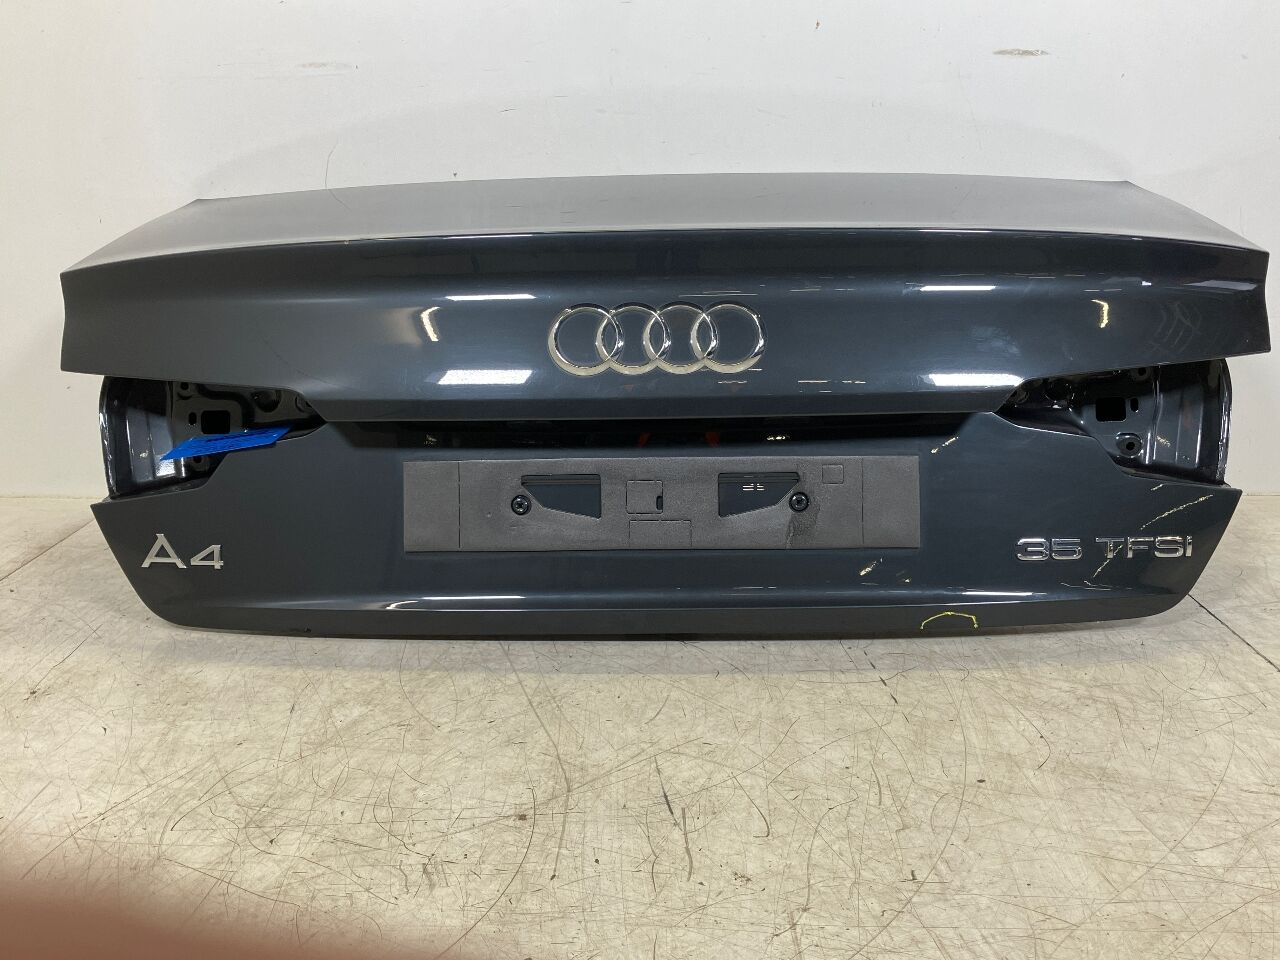 Auto Styling Türschloss Abdeckung Embleme Fall für Audi Sline A4